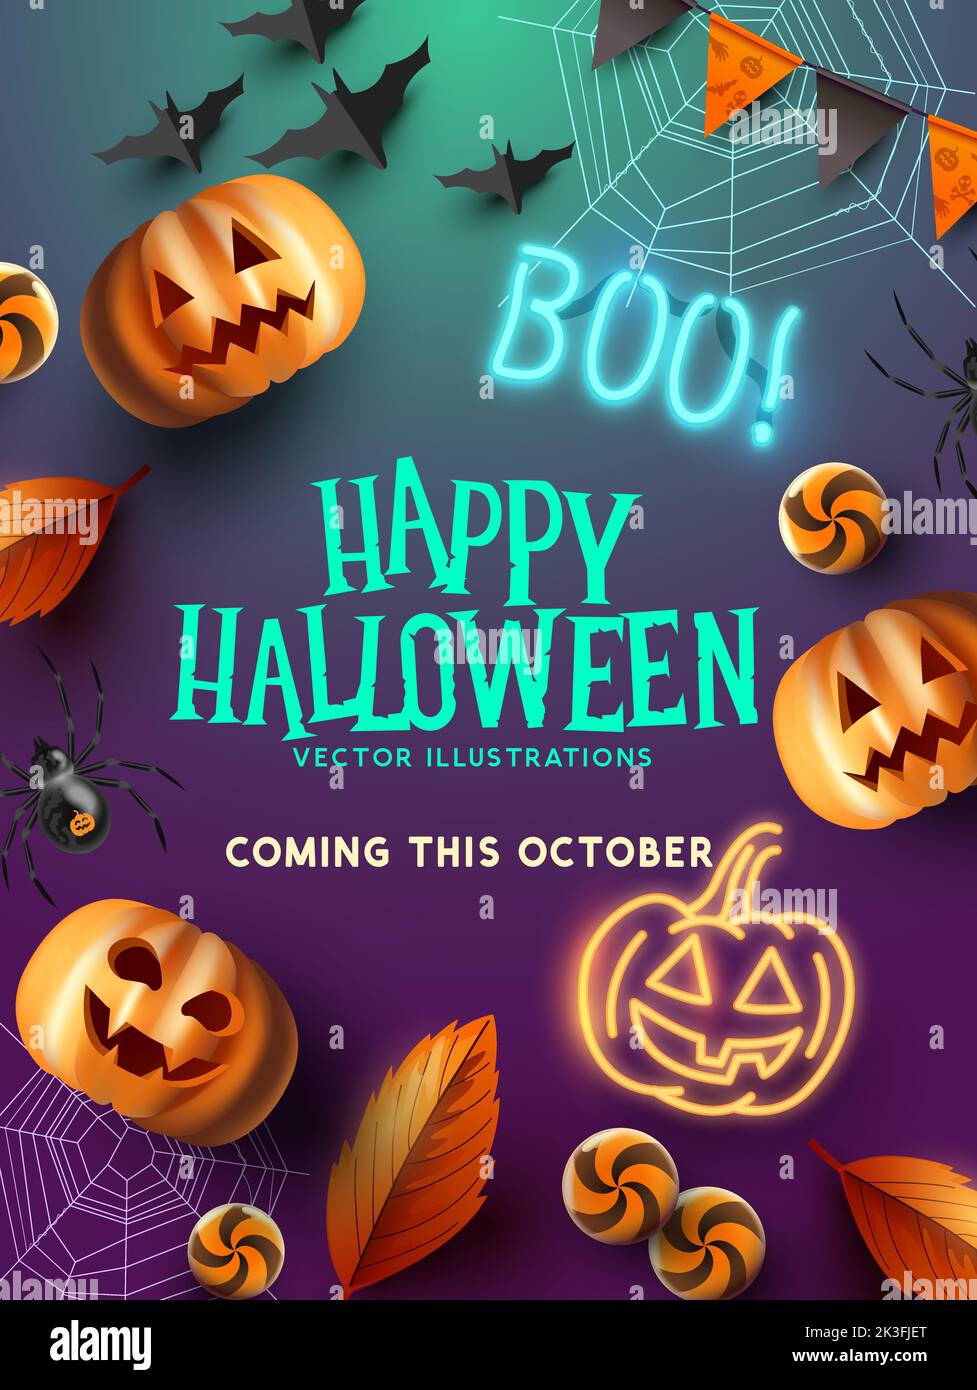 Escalofriante y divertido diseño de fondo para eventos de Halloween con calabazas y murciélagos. Ilustración vectorial Ilustración del Vector